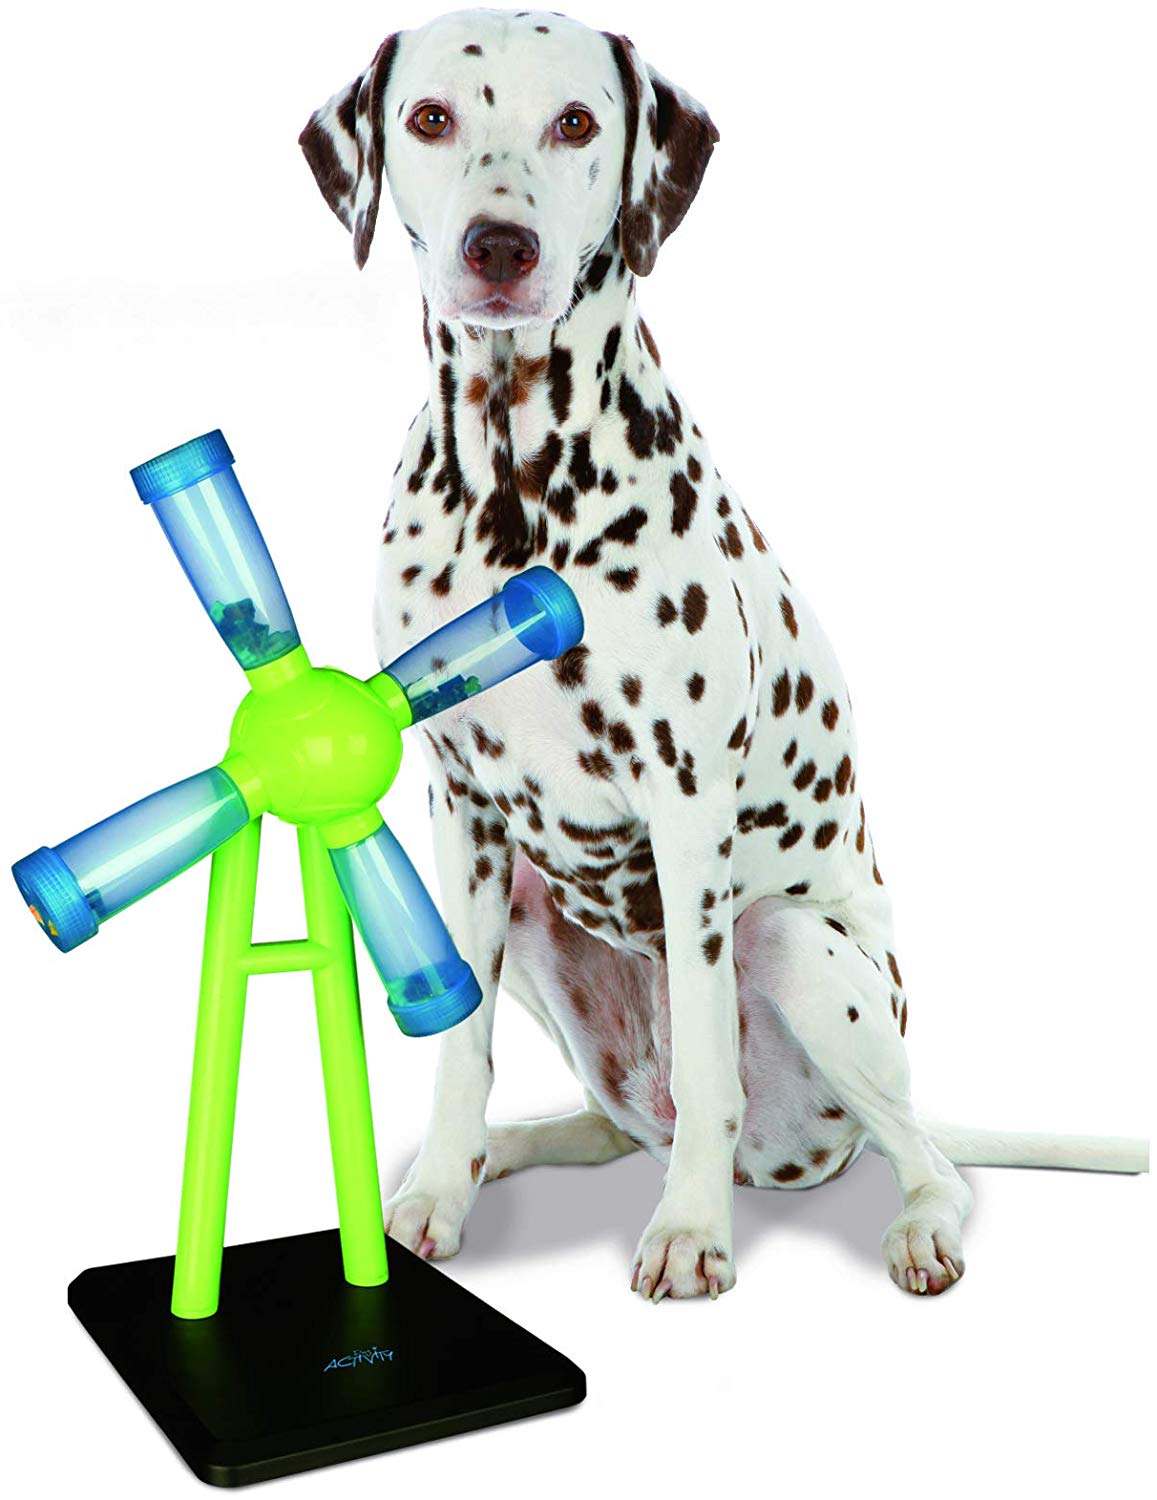 Juguetes para perros Trixie perros online catalogo barato comprar ofertas opiniones pelotas peluches juguetes para perros divertidos irrompibles resistentes trixie interactivo